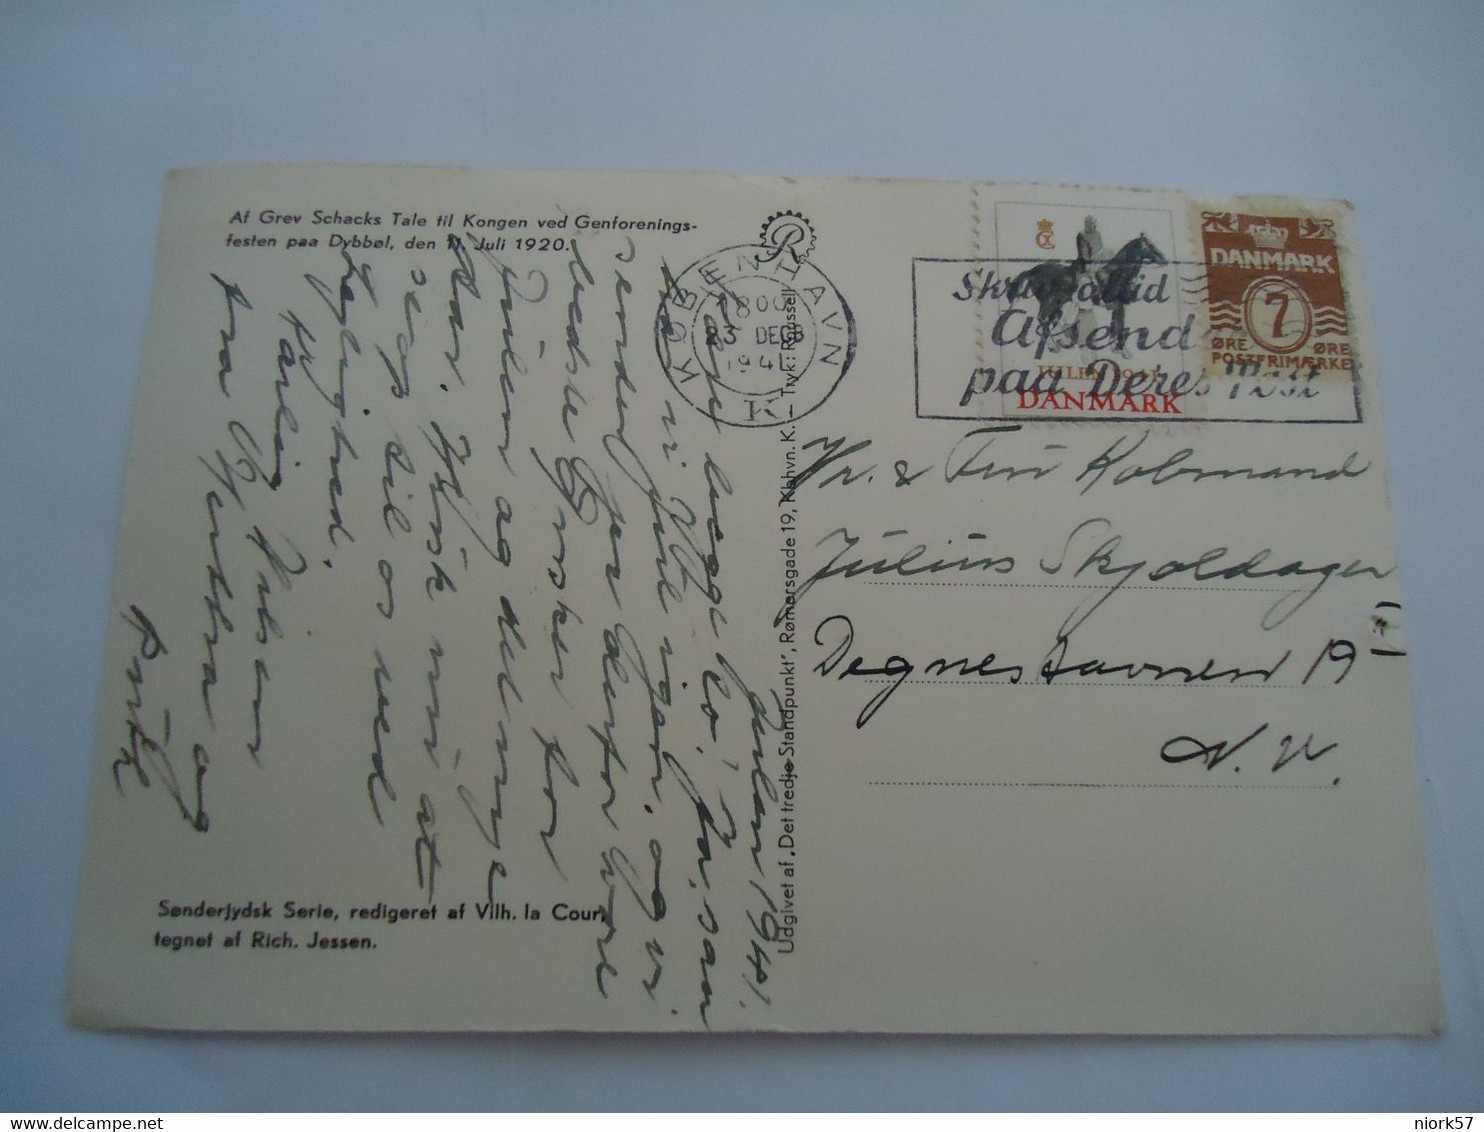 DENMARK CARDS 1941  WITH VIGNETTES JULEN  SOLDIER  1941 - Cartes-maximum (CM)